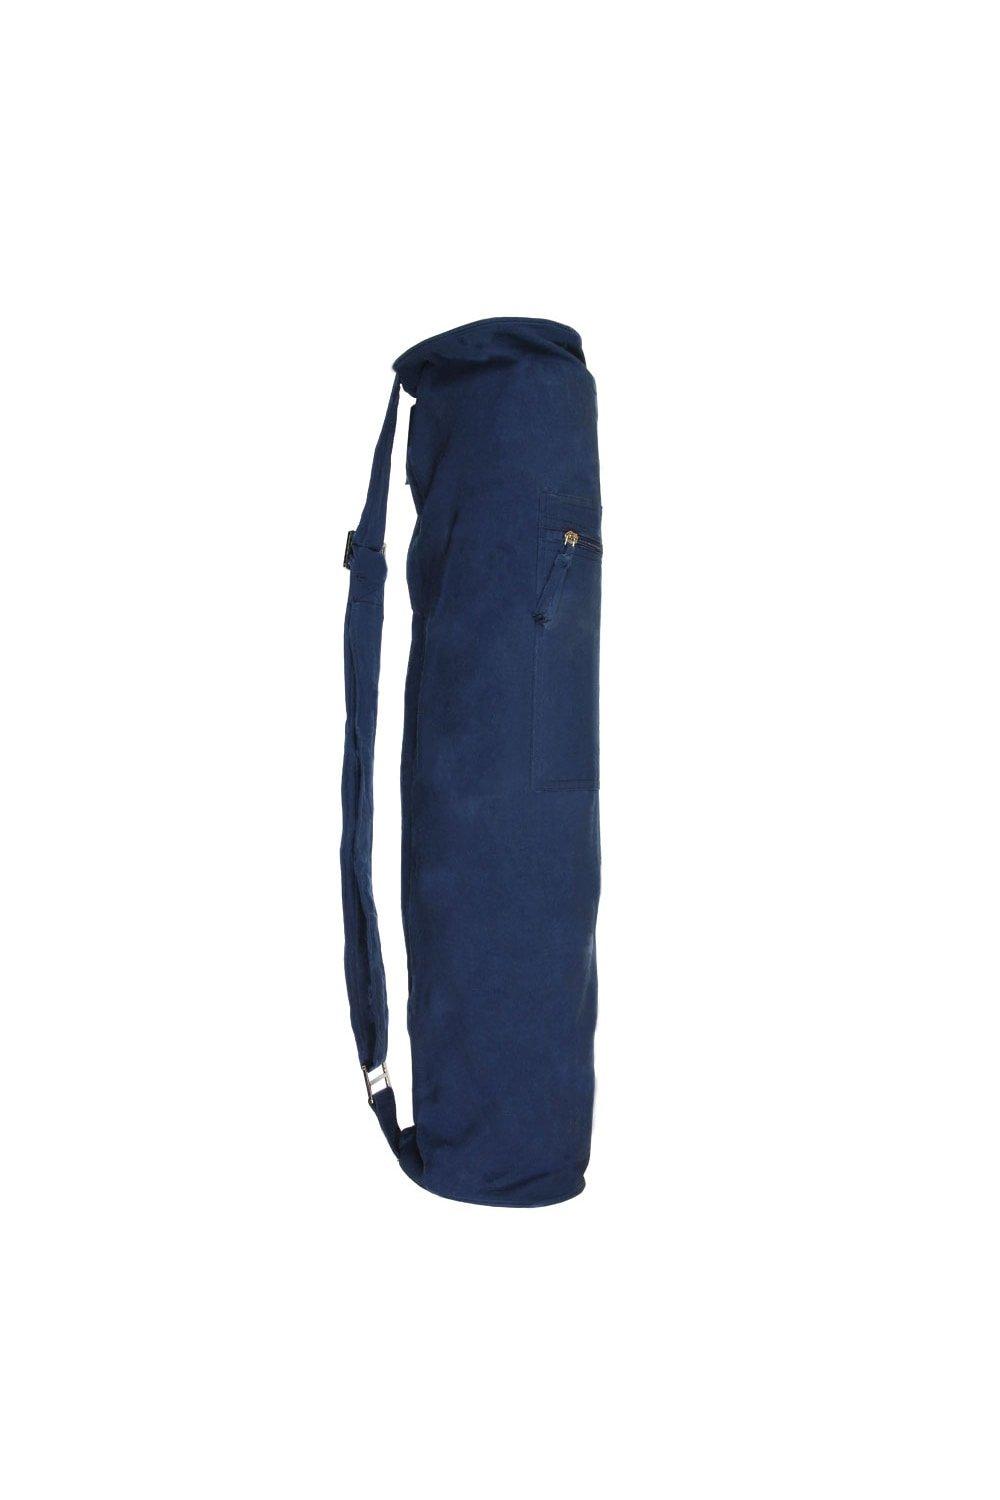 Джутовая сумка для коврика для йоги Yoga-Mad, синий косметичка mior на молнии 19х21х9 см ручки для переноски крючок для подвешивания подкладка водонепроницаемая черный